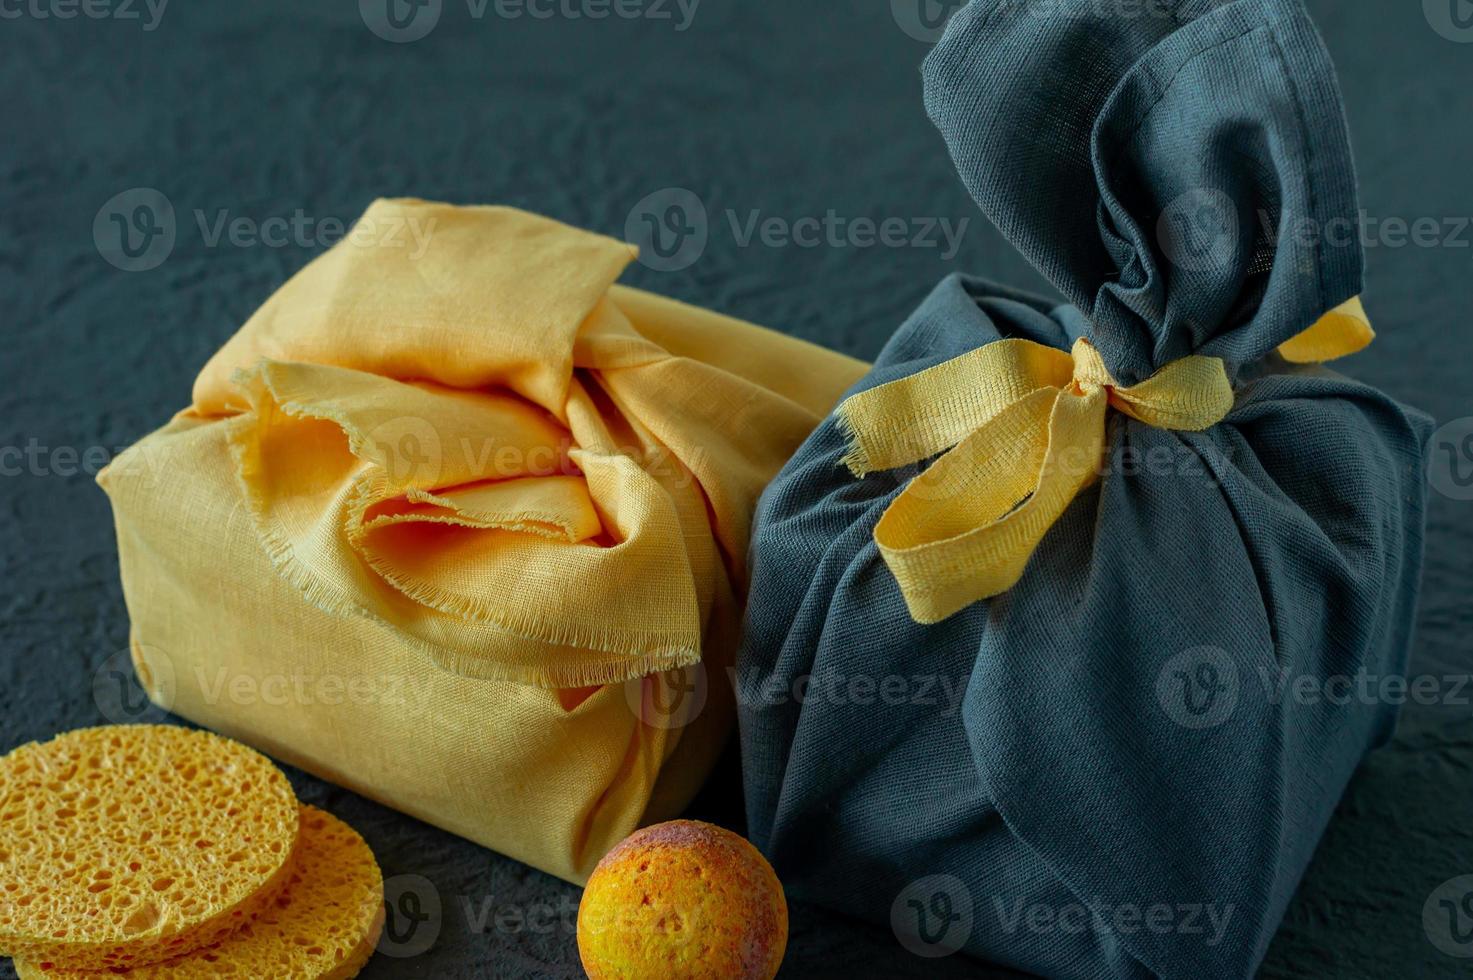 concept de soins spa et de soins du corps aux couleurs de l'année 2021 - jaune éclairant et gris ultime. cadeau emballé dans un style furoshiki. photo